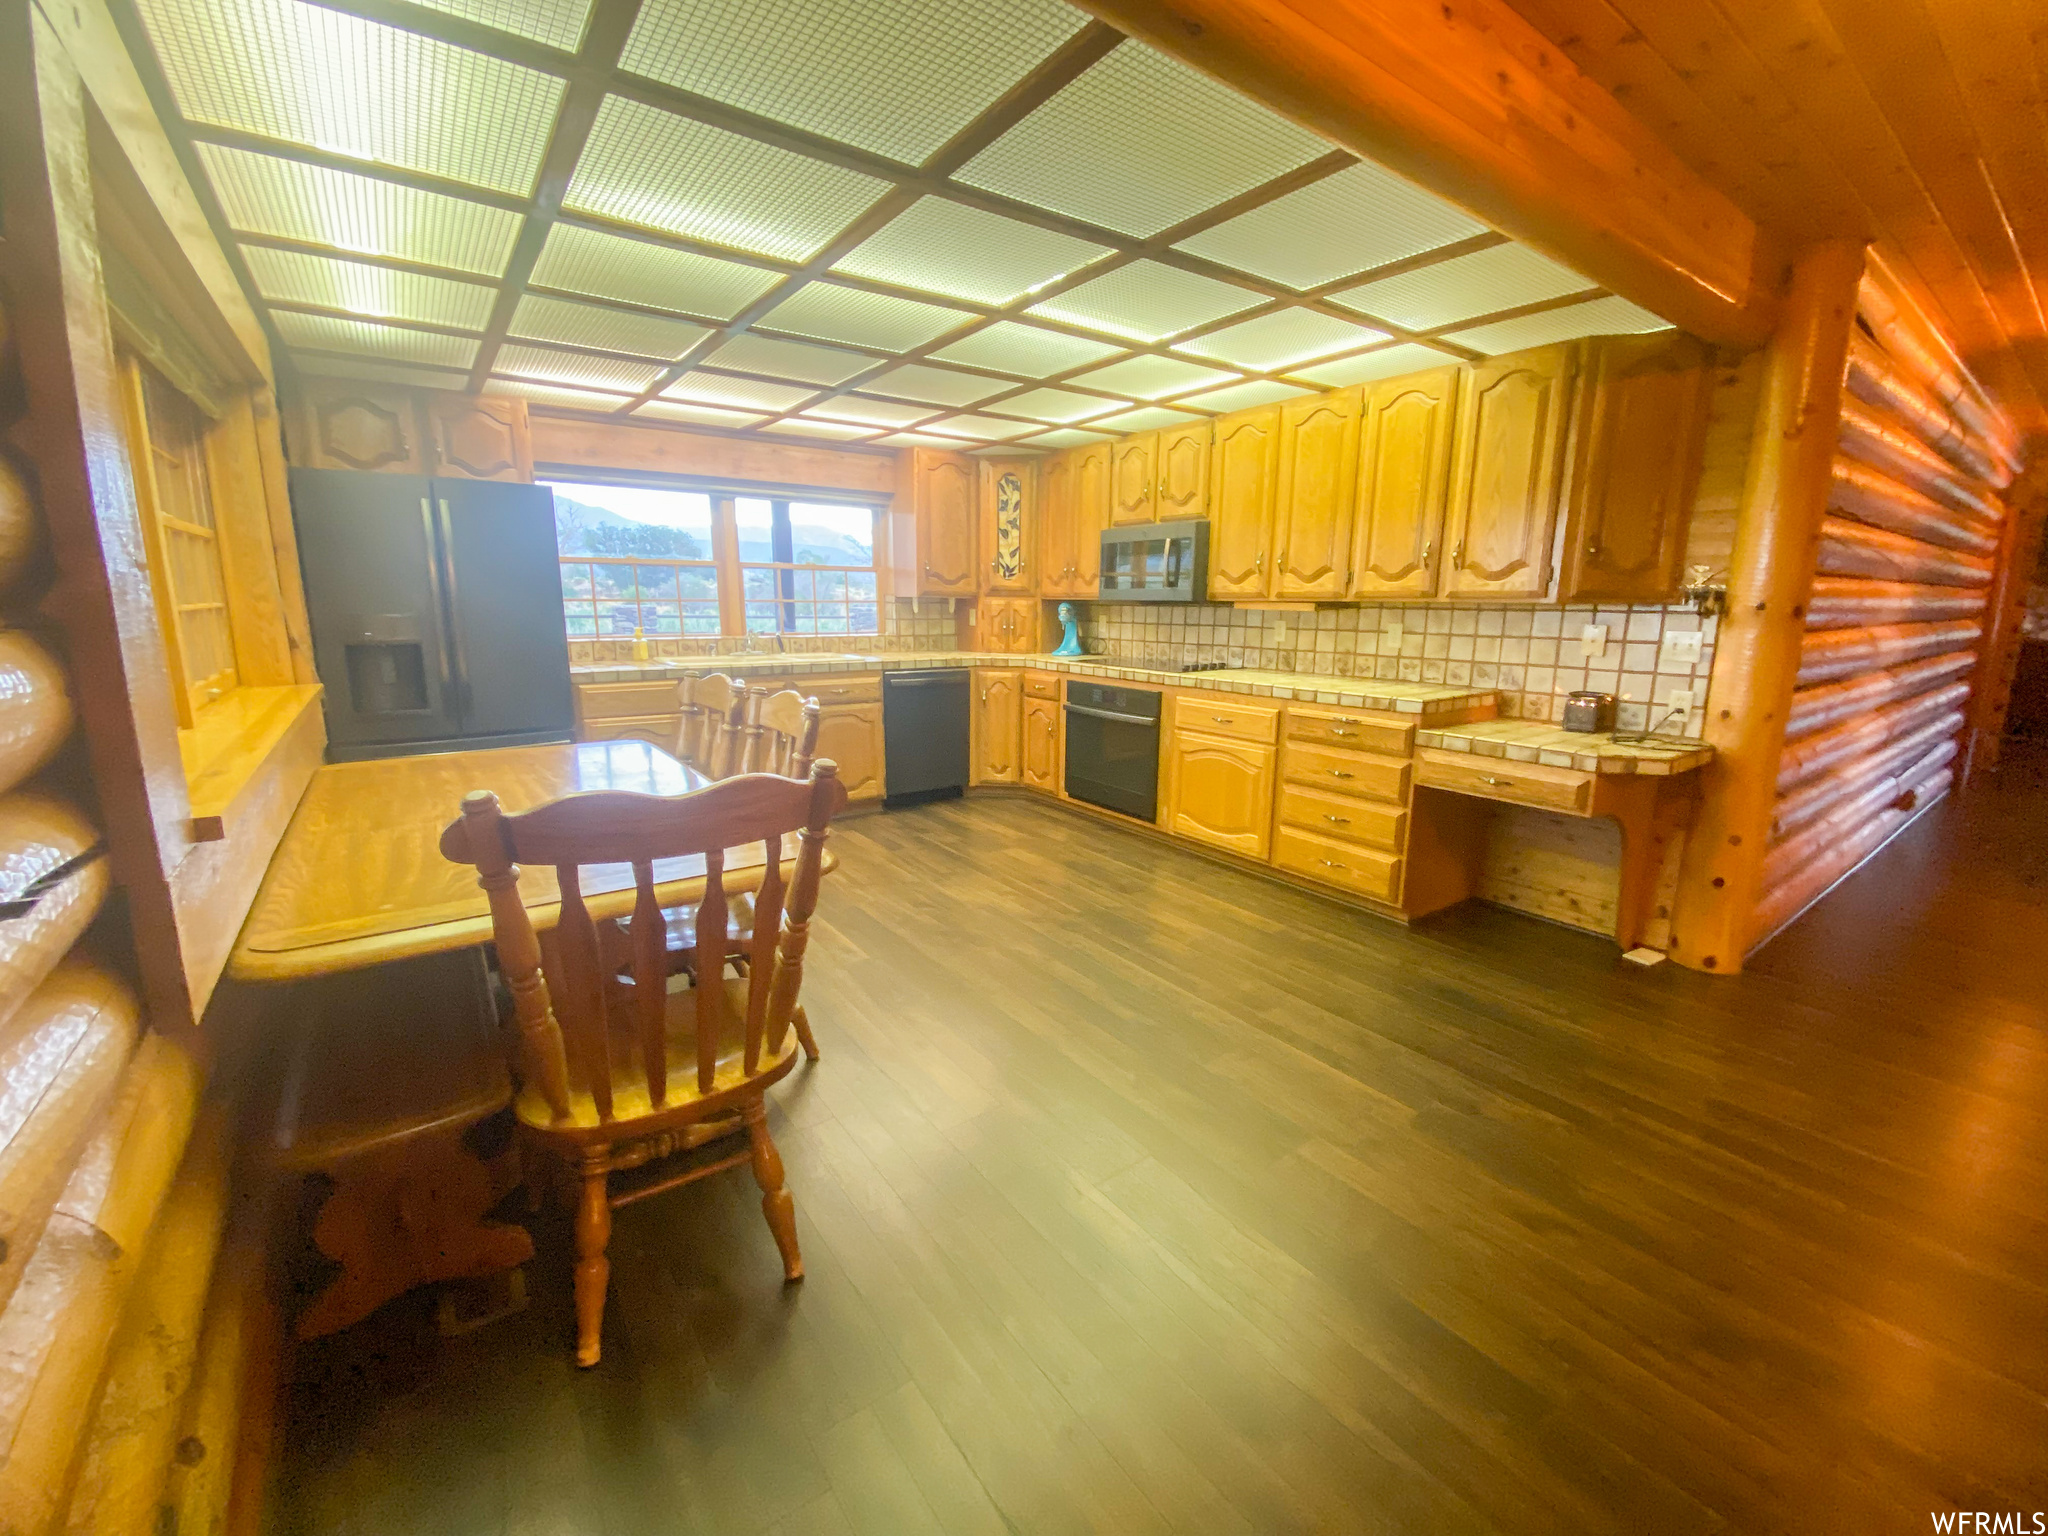 Dining room with dark hardwood / wood-style floors